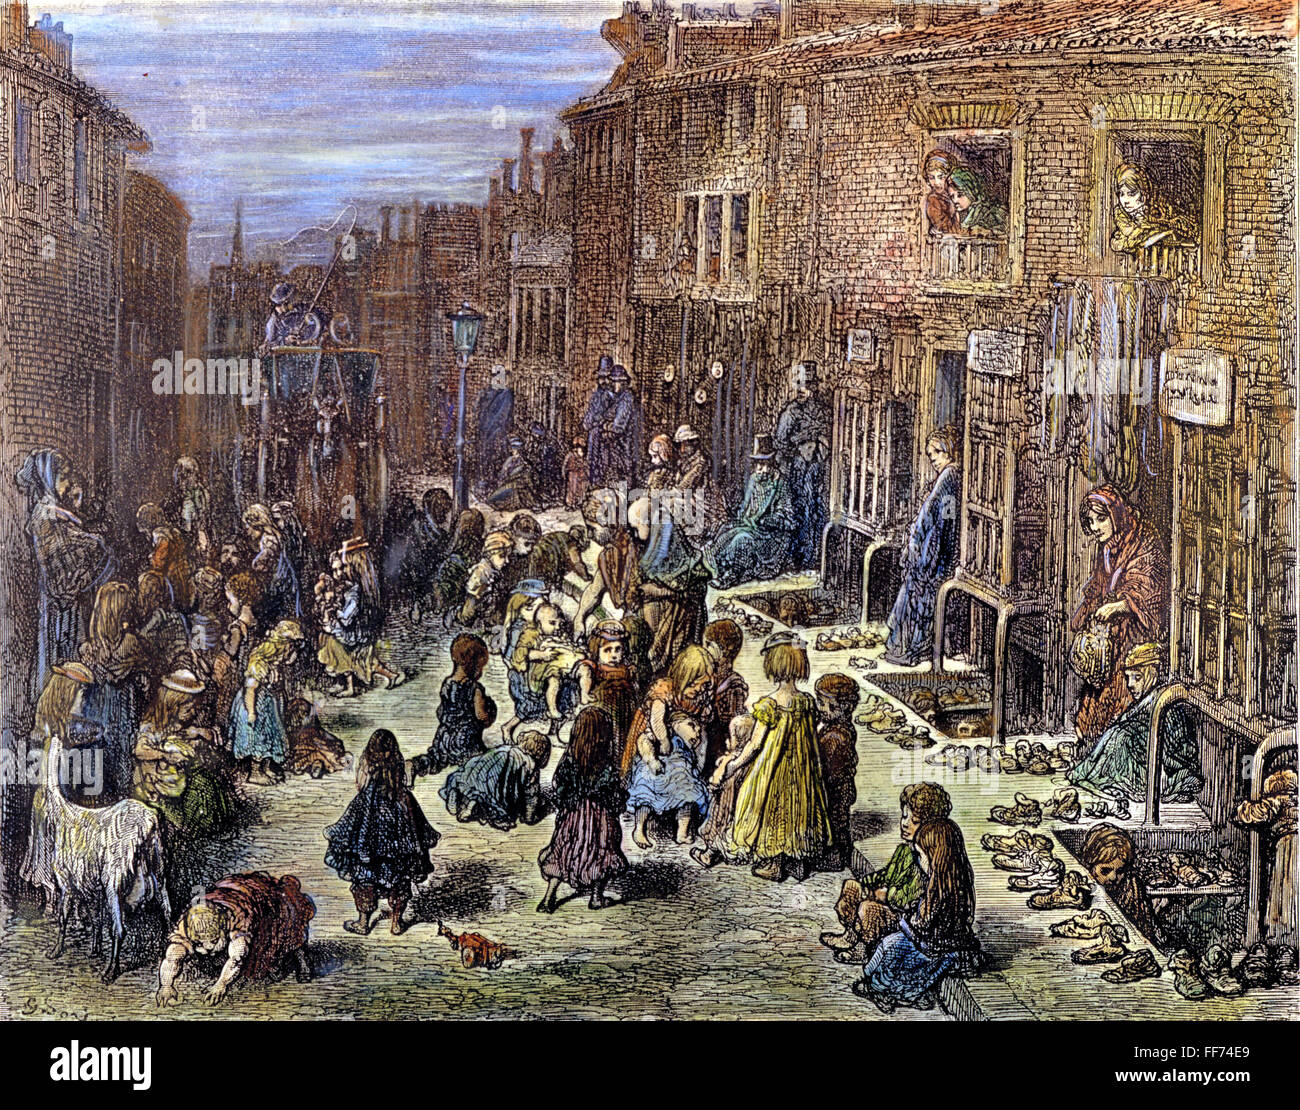 DOR╔: Londra, 1872. /N'Dudley Street, Seven Dials." di legno colorata dopo incisione Gustave DorΘ da 'London: Un pellegrinaggio", 1872. Foto Stock